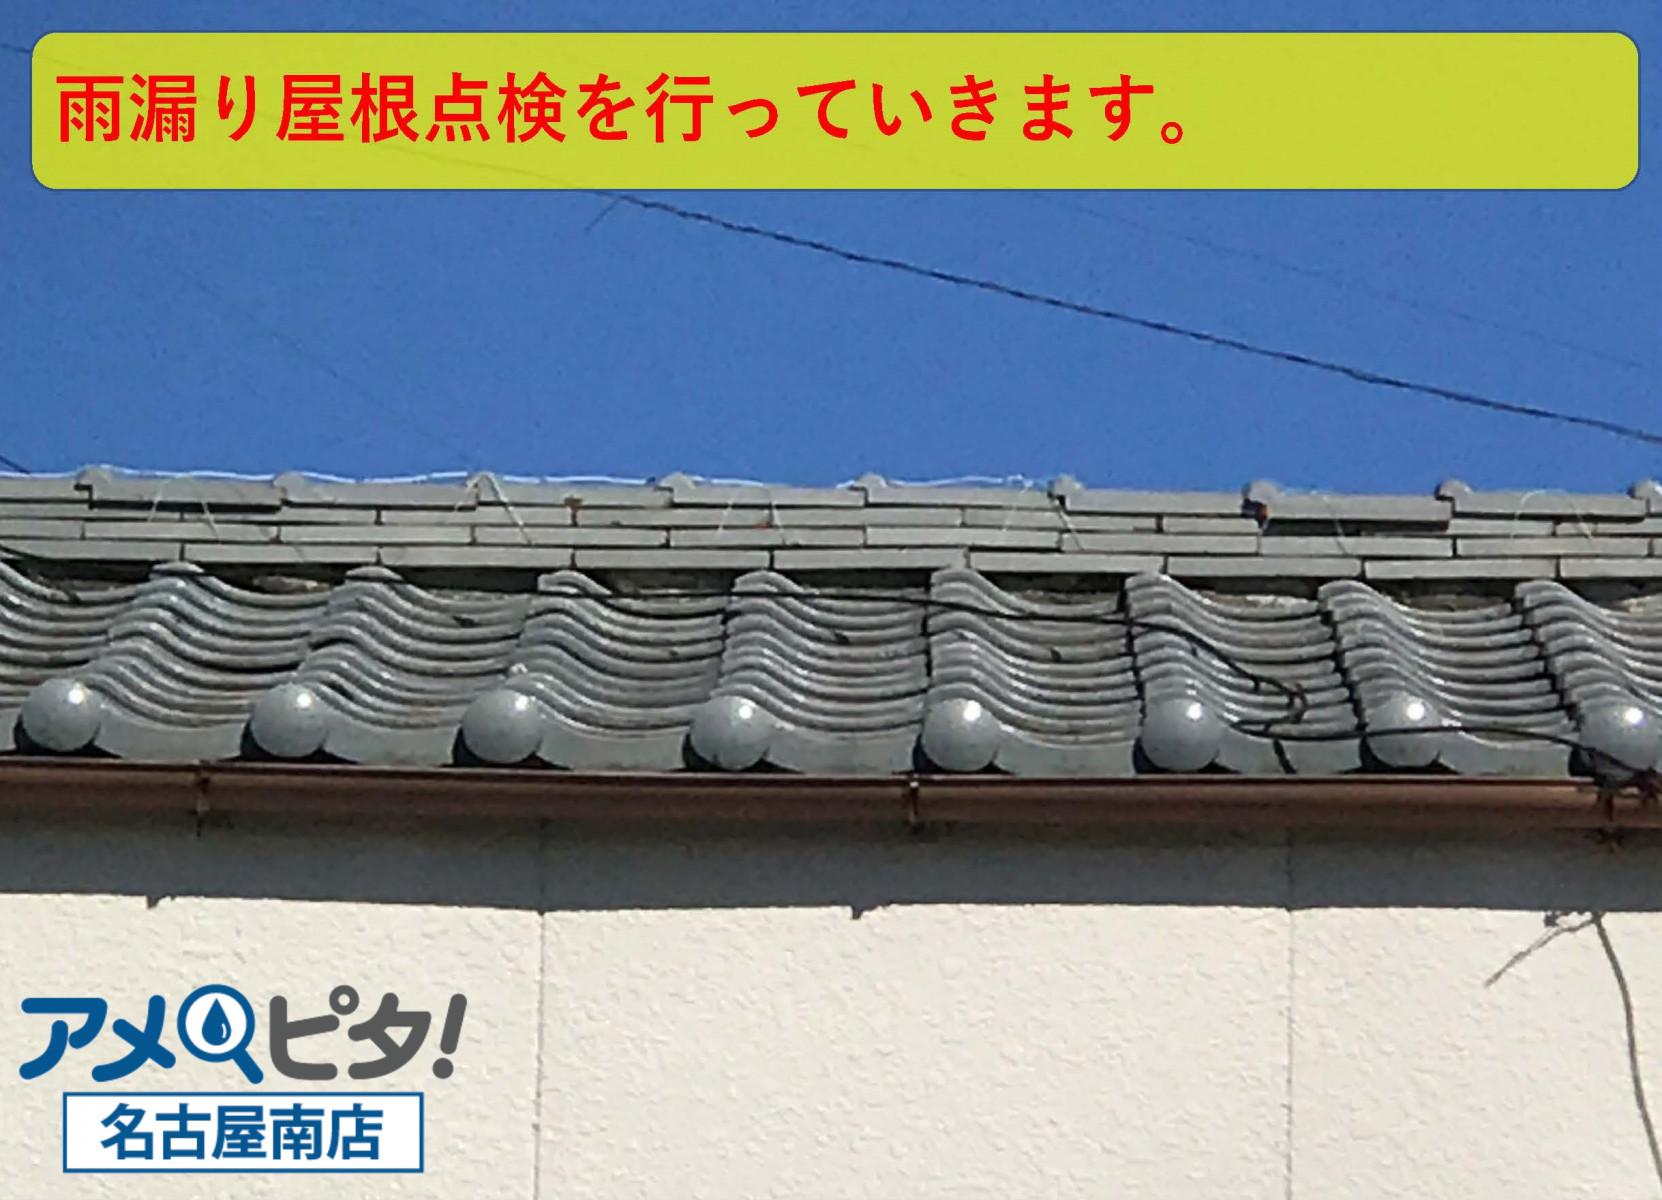 知多市にて風通しが良すぎる立地に建つ屋根が突風で瓦が落ちていました